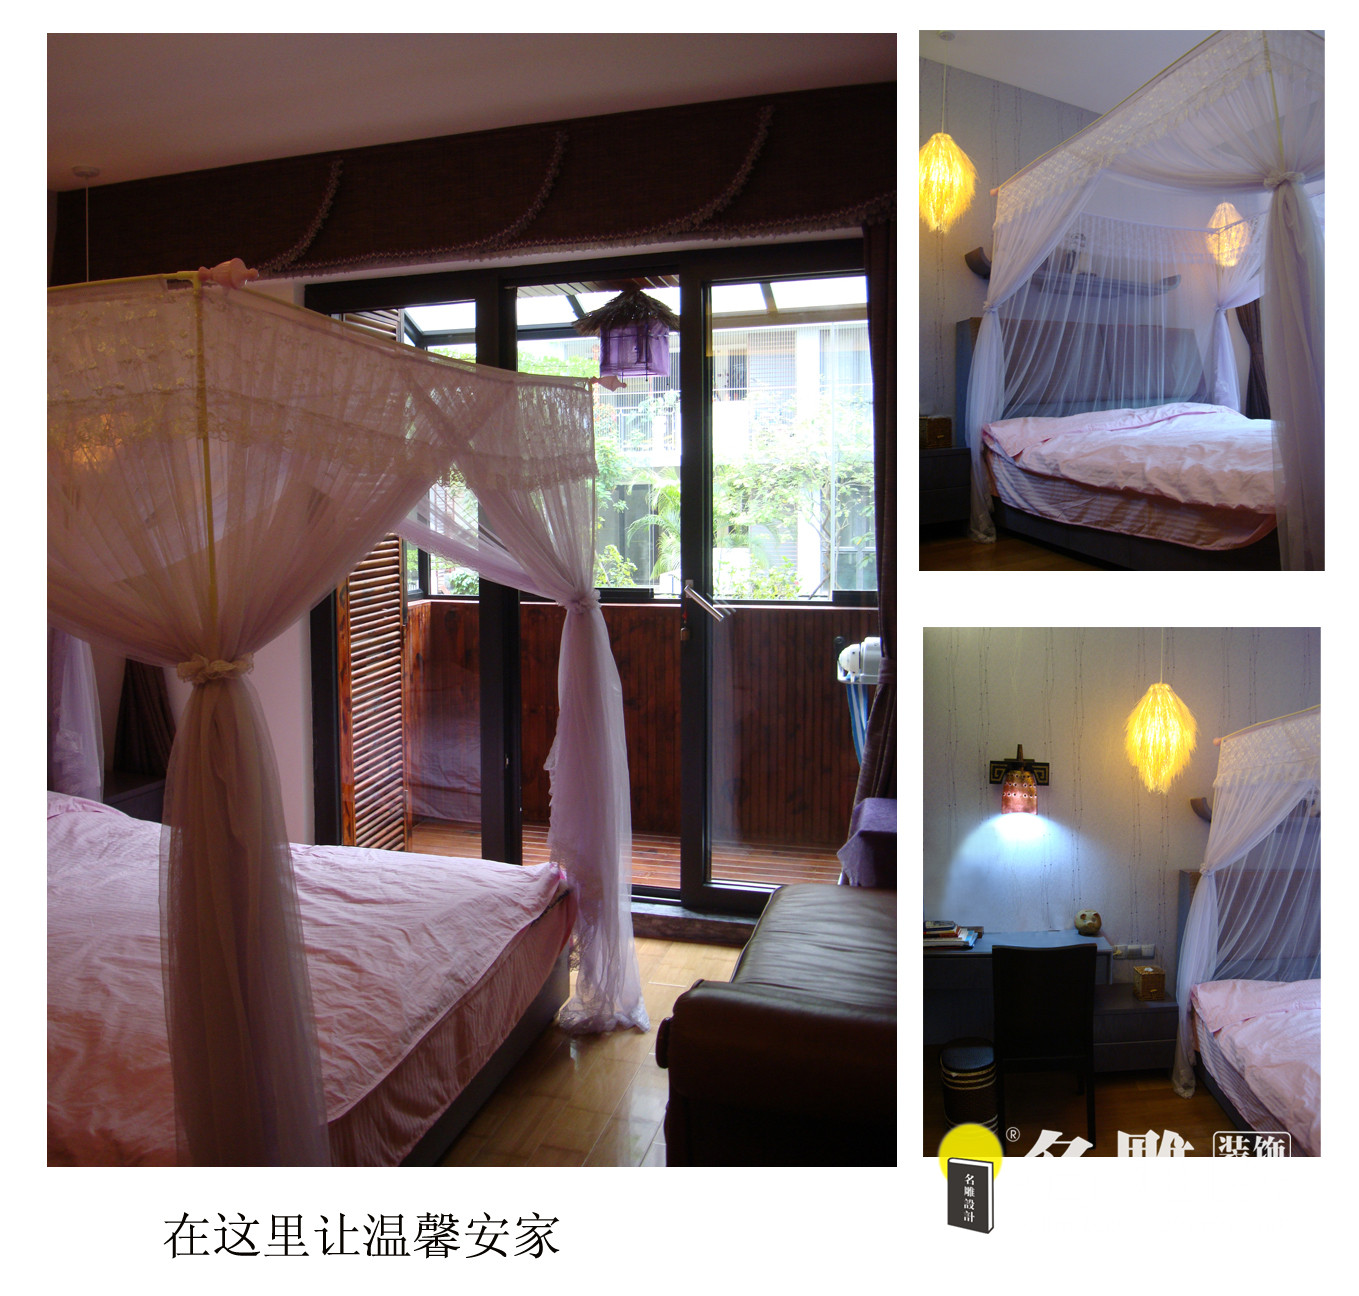 中式田园 田园 复式 三居 名雕装饰 卧室图片来自名雕装饰设计在270平中式田园风格三居室雅居的分享